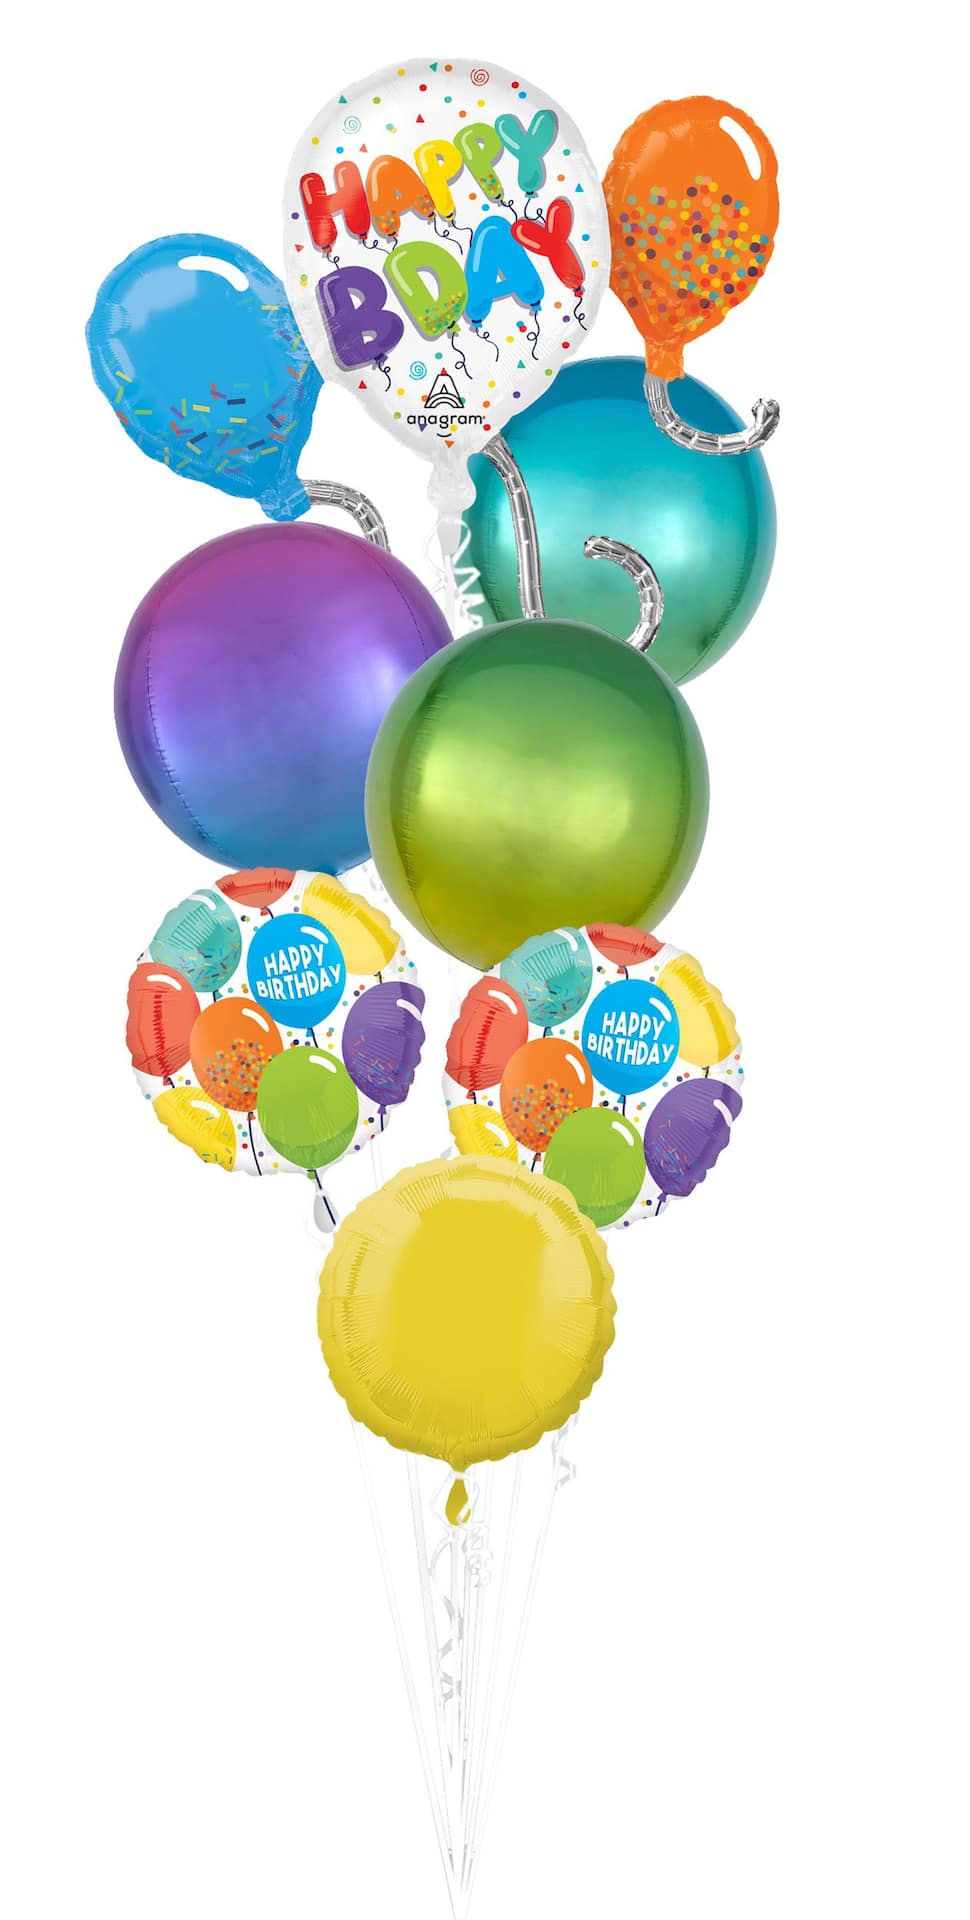 Ballon Rond - Anniversaire 20 ans points colorés - Bouquet de Ballons